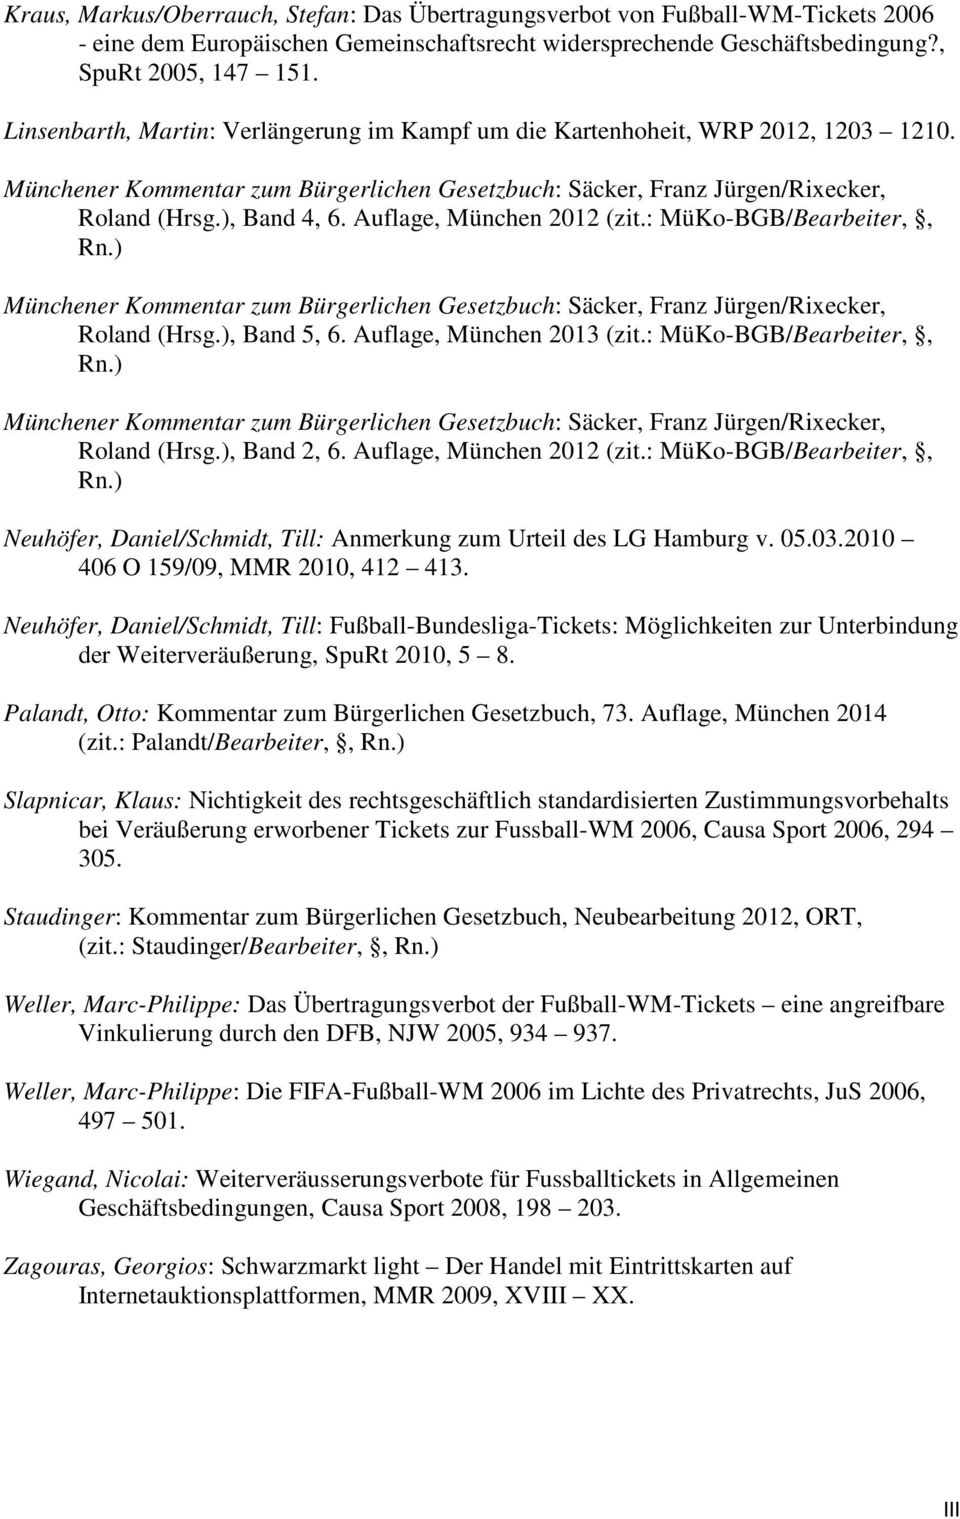 Auflage, München 2012 (zit.: MüKo-BGB/Bearbeiter,, Rn.) Münchener Kommentar zum Bürgerlichen Gesetzbuch: Säcker, Franz Jürgen/Rixecker, Roland (Hrsg.), Band 5, 6. Auflage, München 2013 (zit.